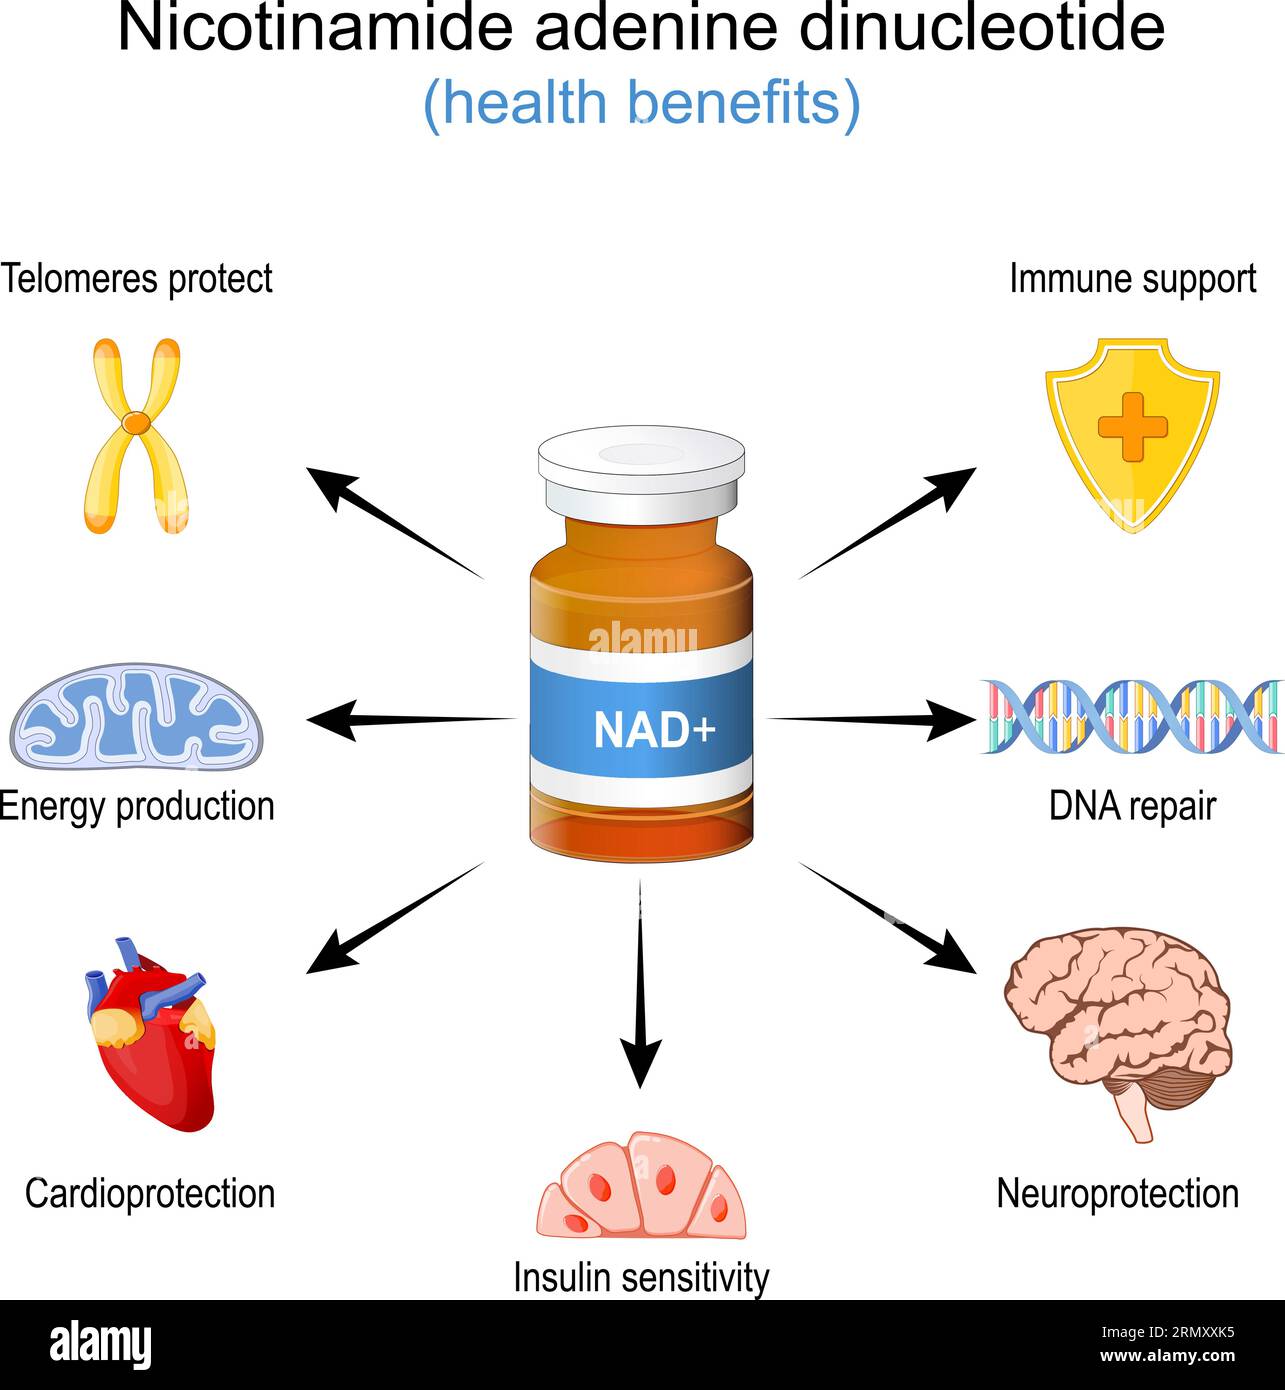 Benefici per la salute di NAD+. NAD Plus. Effetto benessere di un Nicotinamide adenina dinucleotide. Terapia anti-invecchiamento. Illustrazione vettoriale Illustrazione Vettoriale